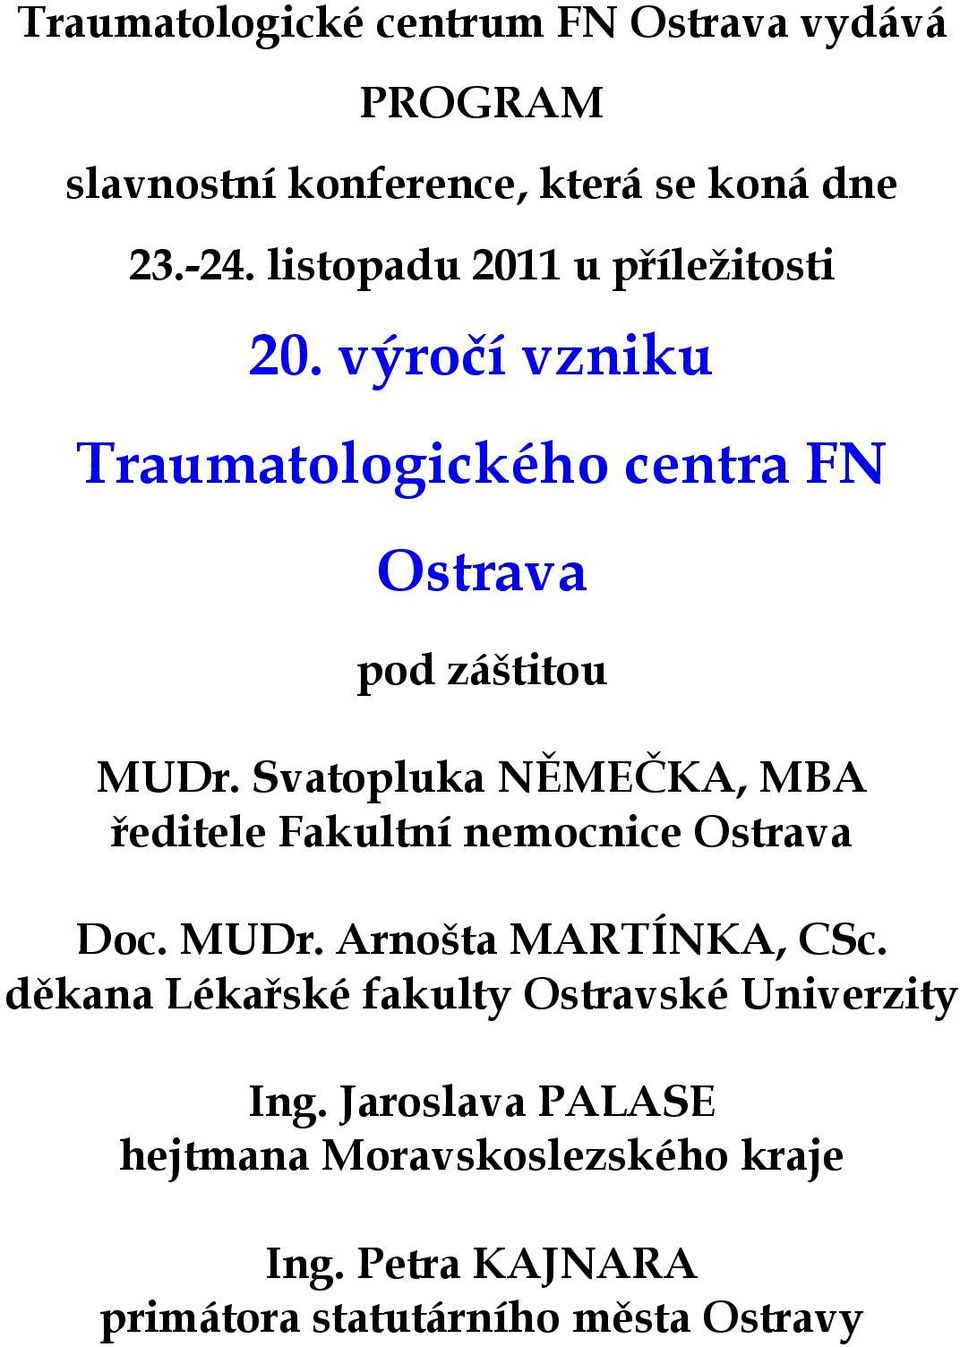 Svatopluka NĚMEČKA, MBA ředitele Fakultní nemocnice Ostrava Doc. MUDr. Arnošta MARTÍNKA, CSc.